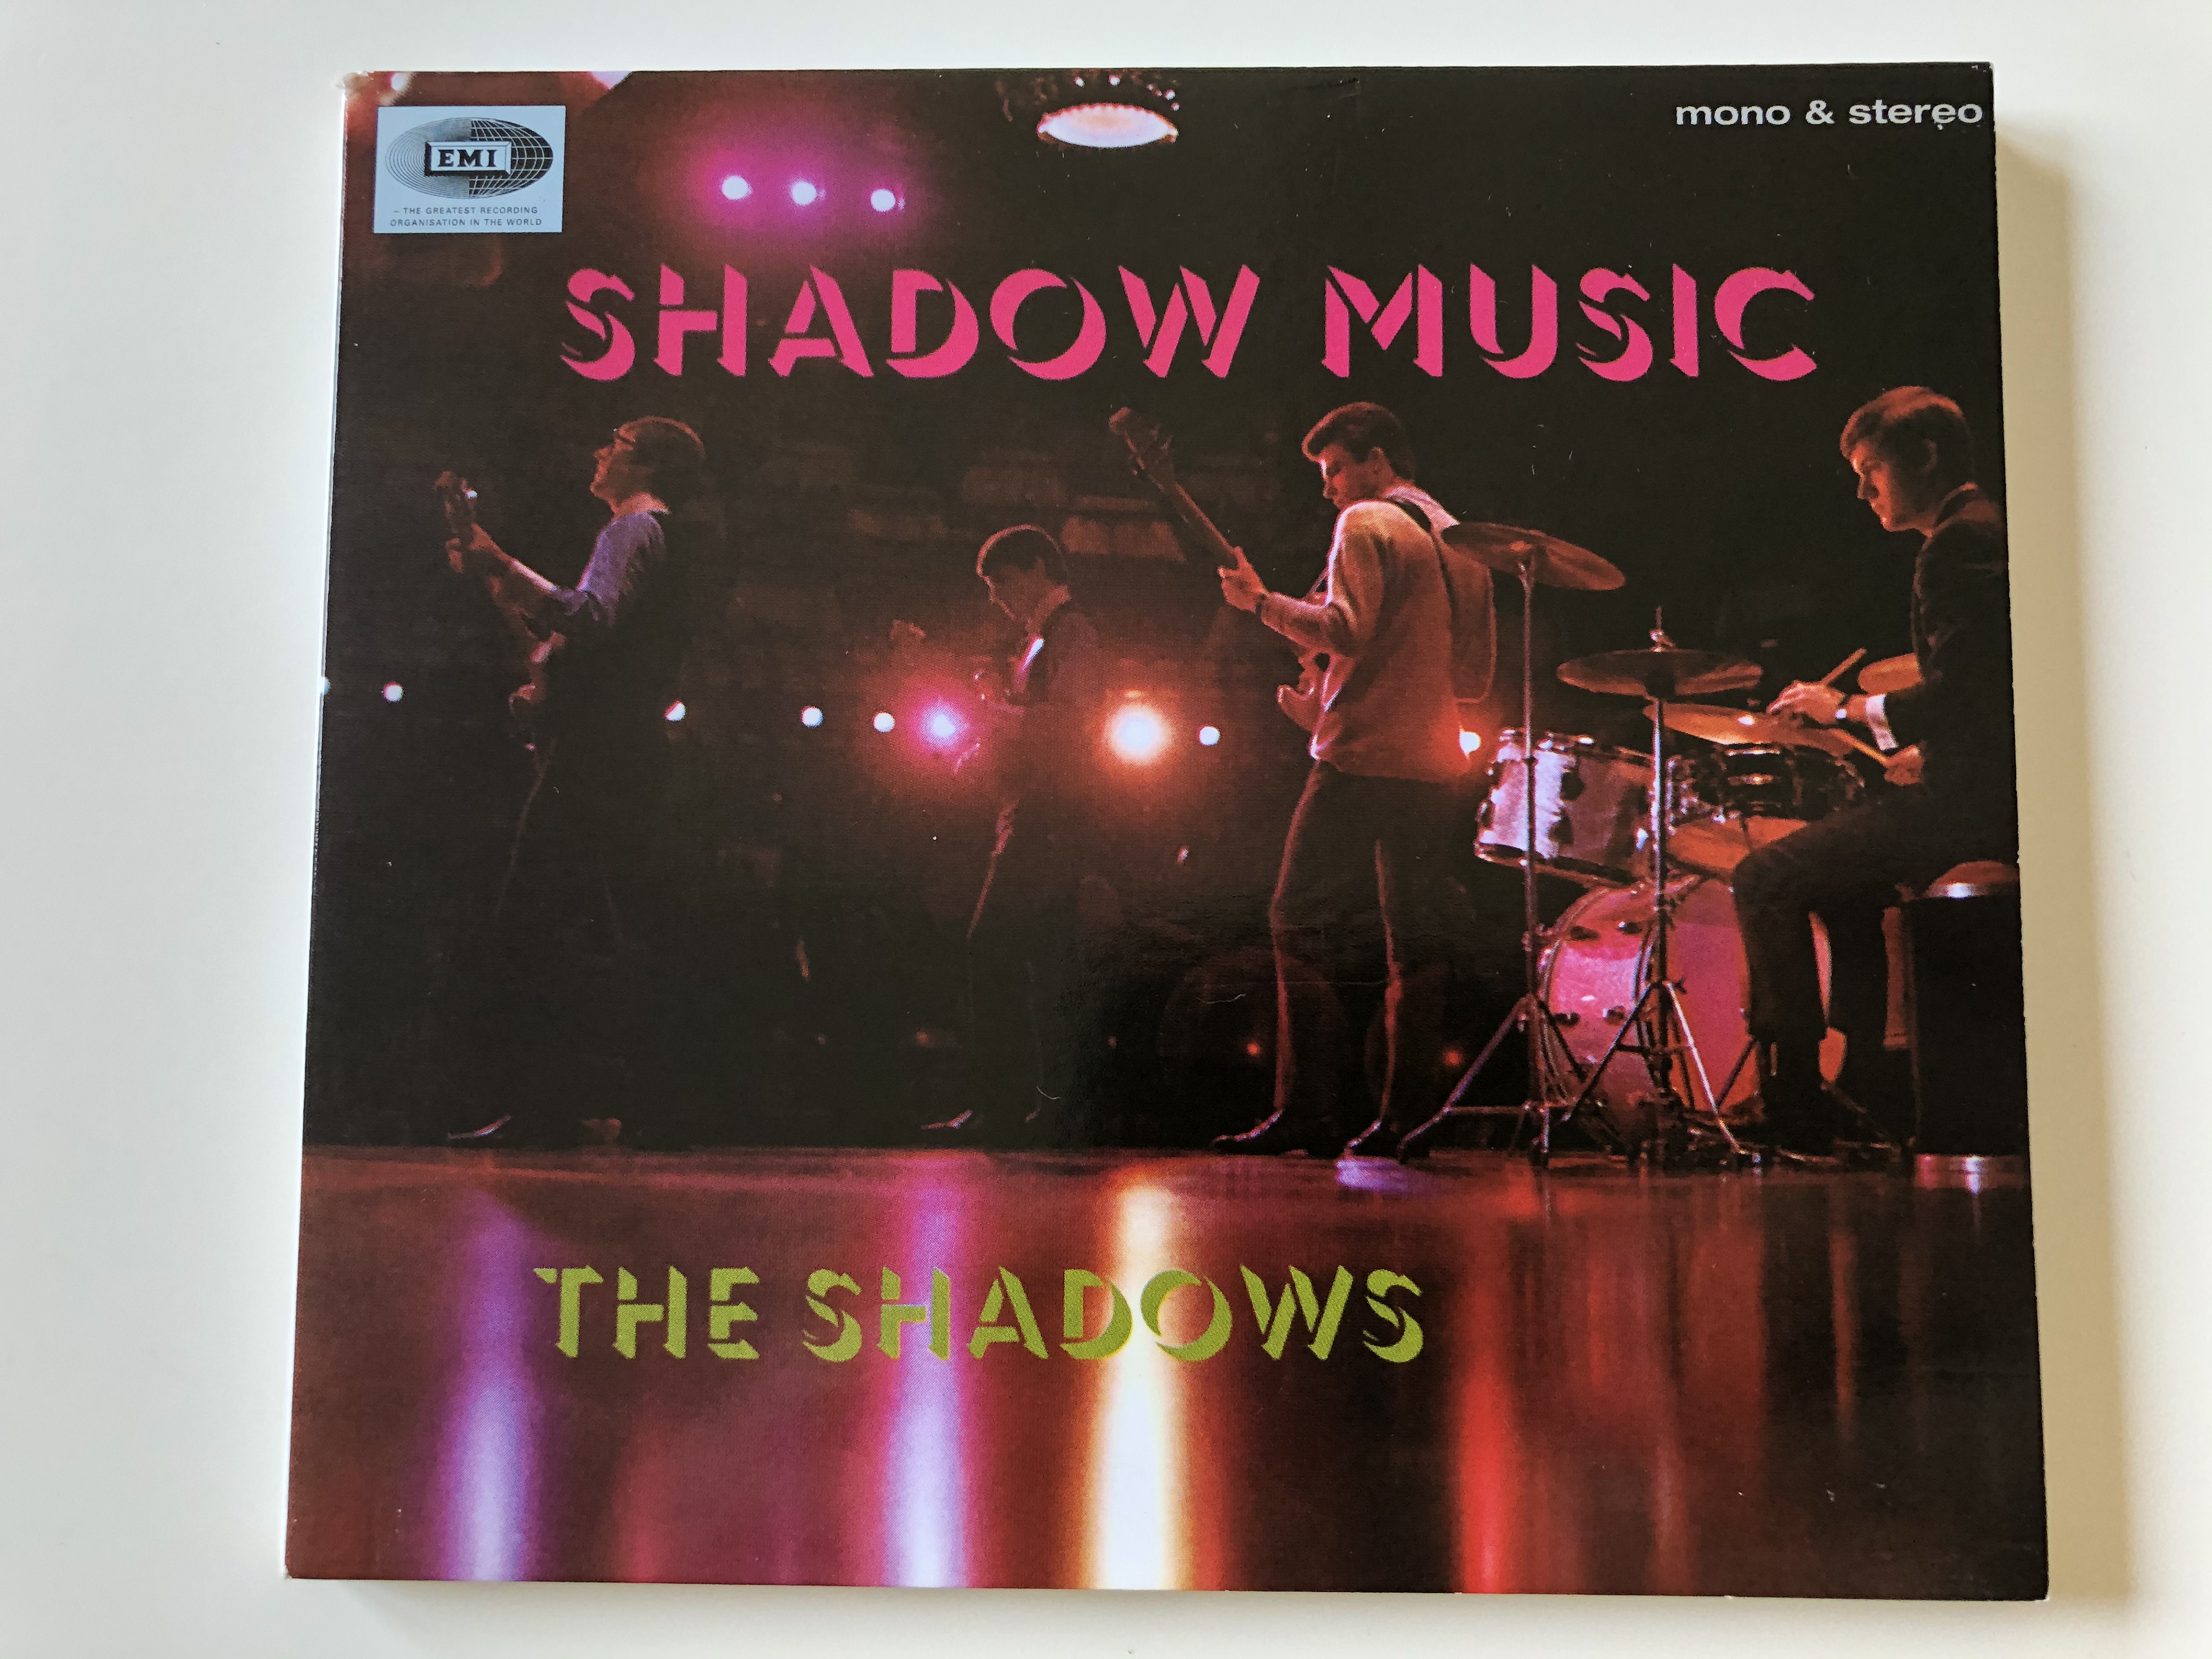 the-shadows-shadow-music-emi-audio-cd-mono-stereo-724349515123-1-.jpg